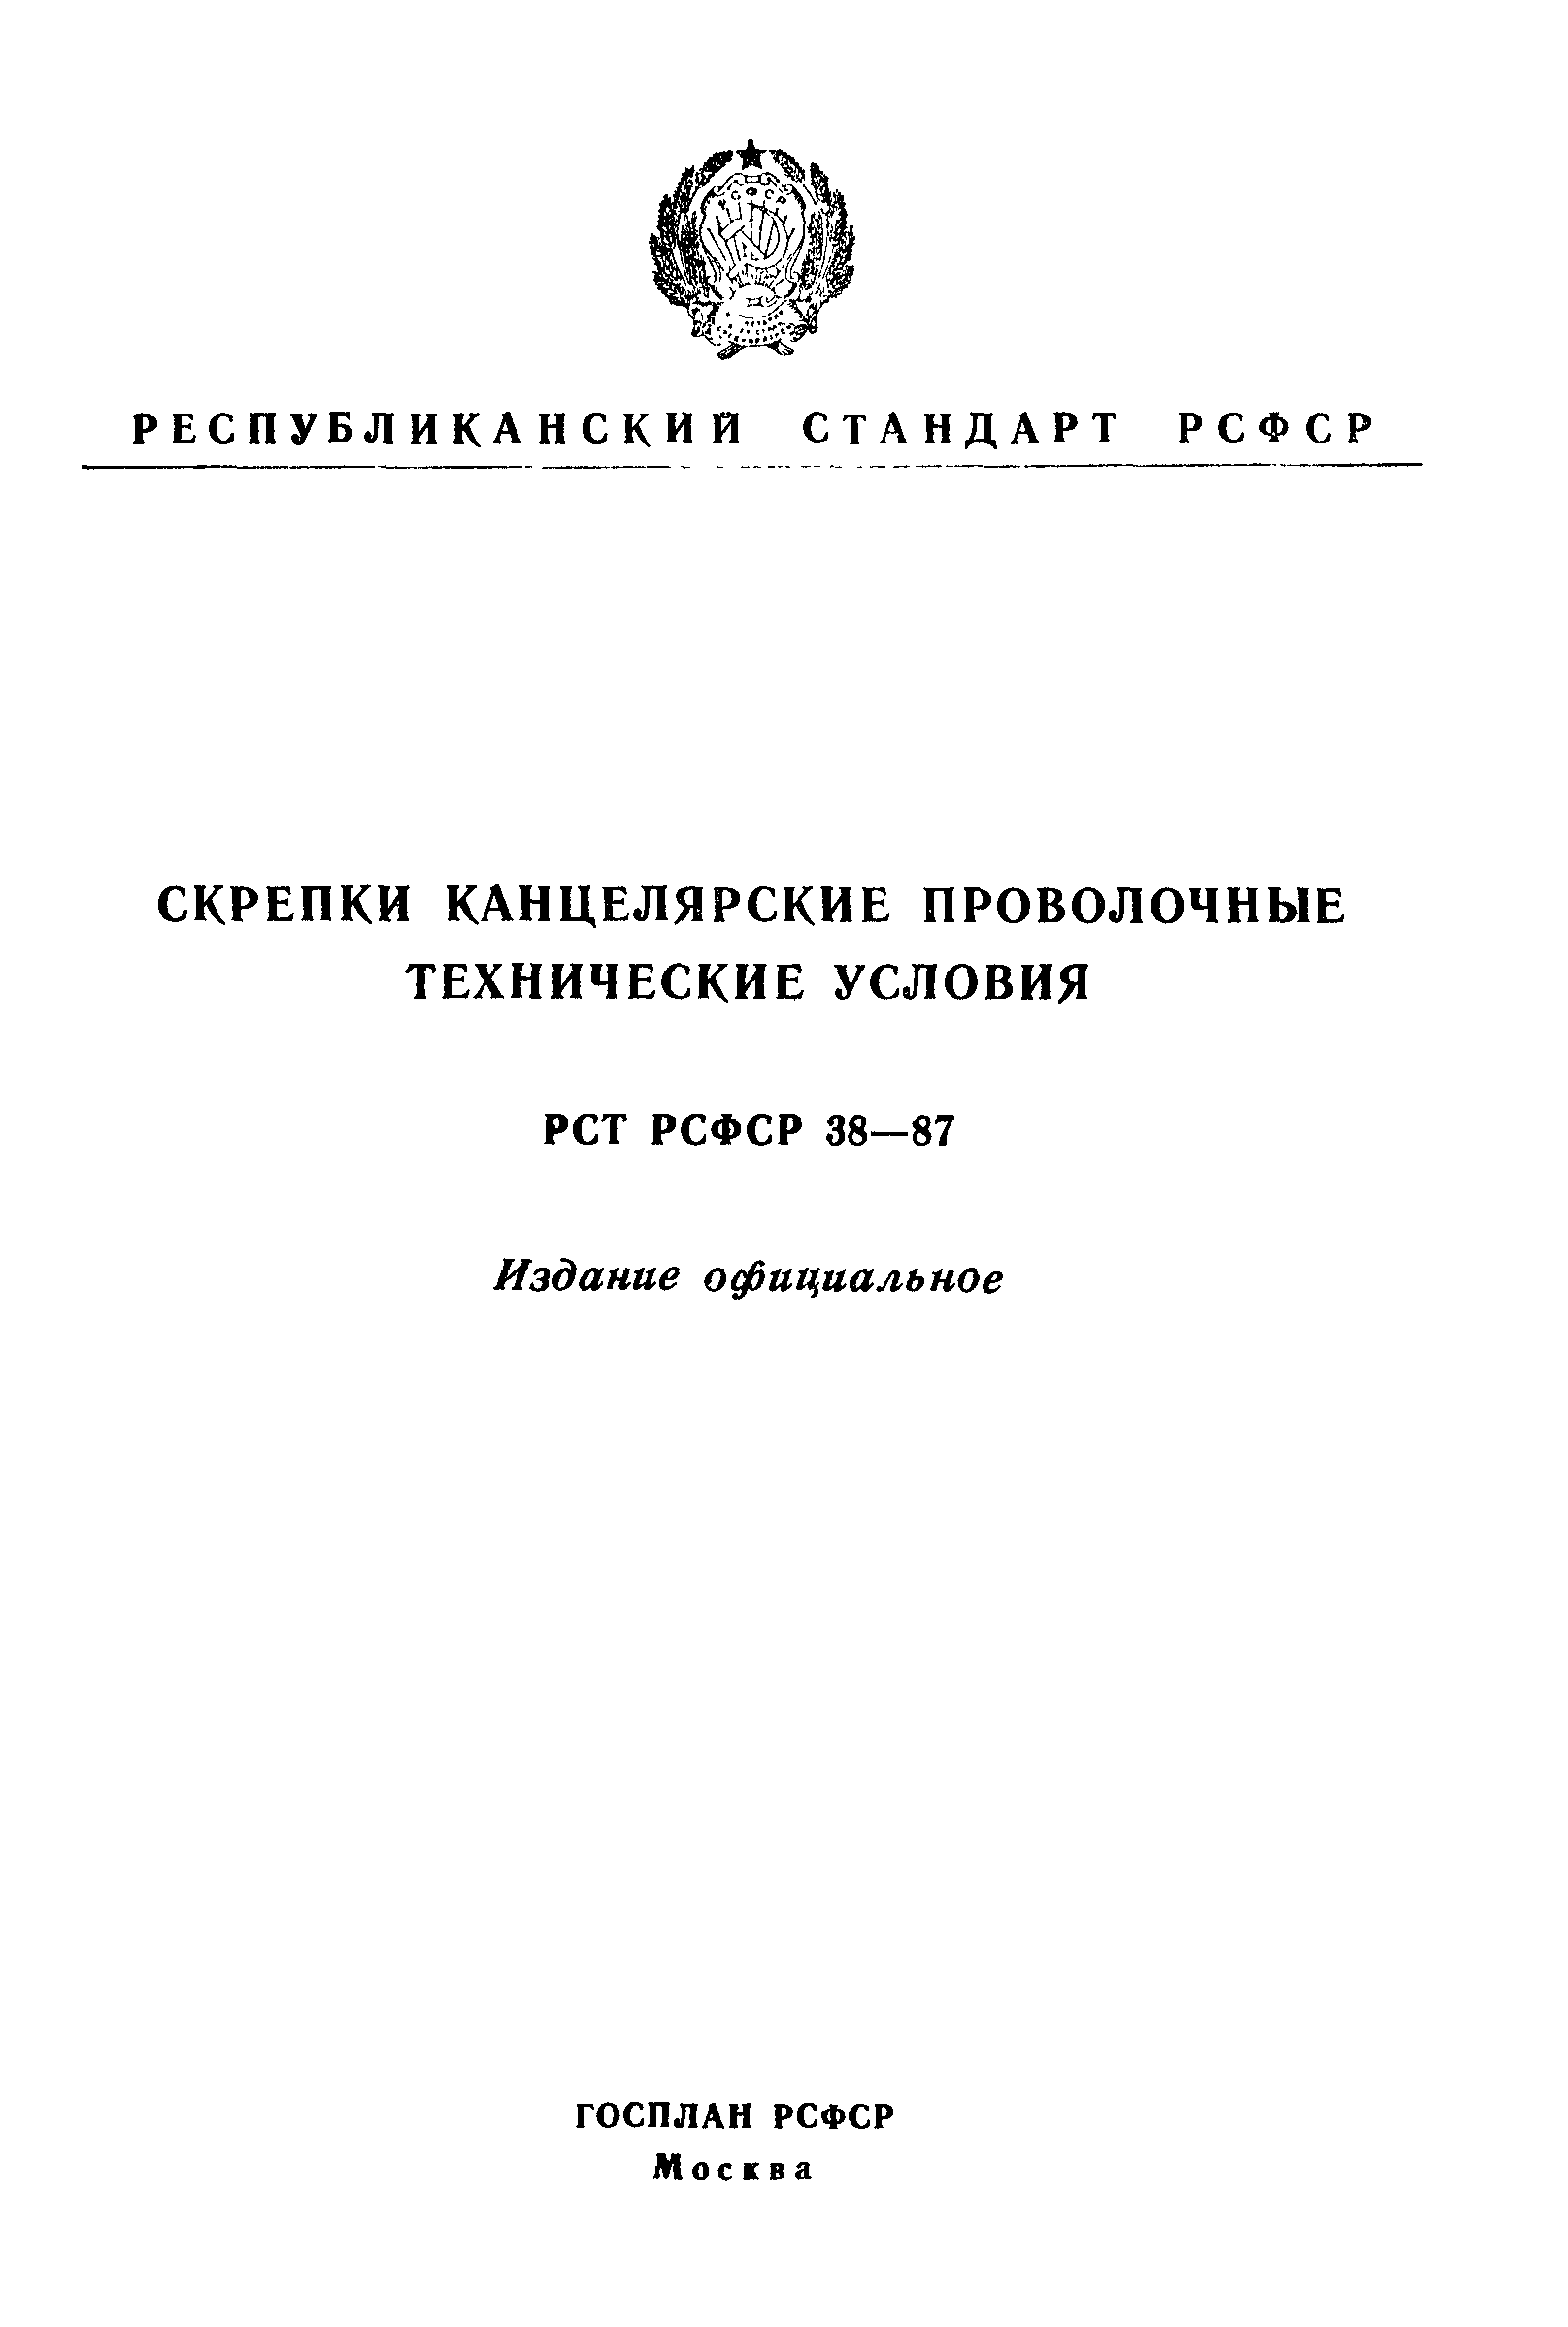 РСТ РСФСР 38-87